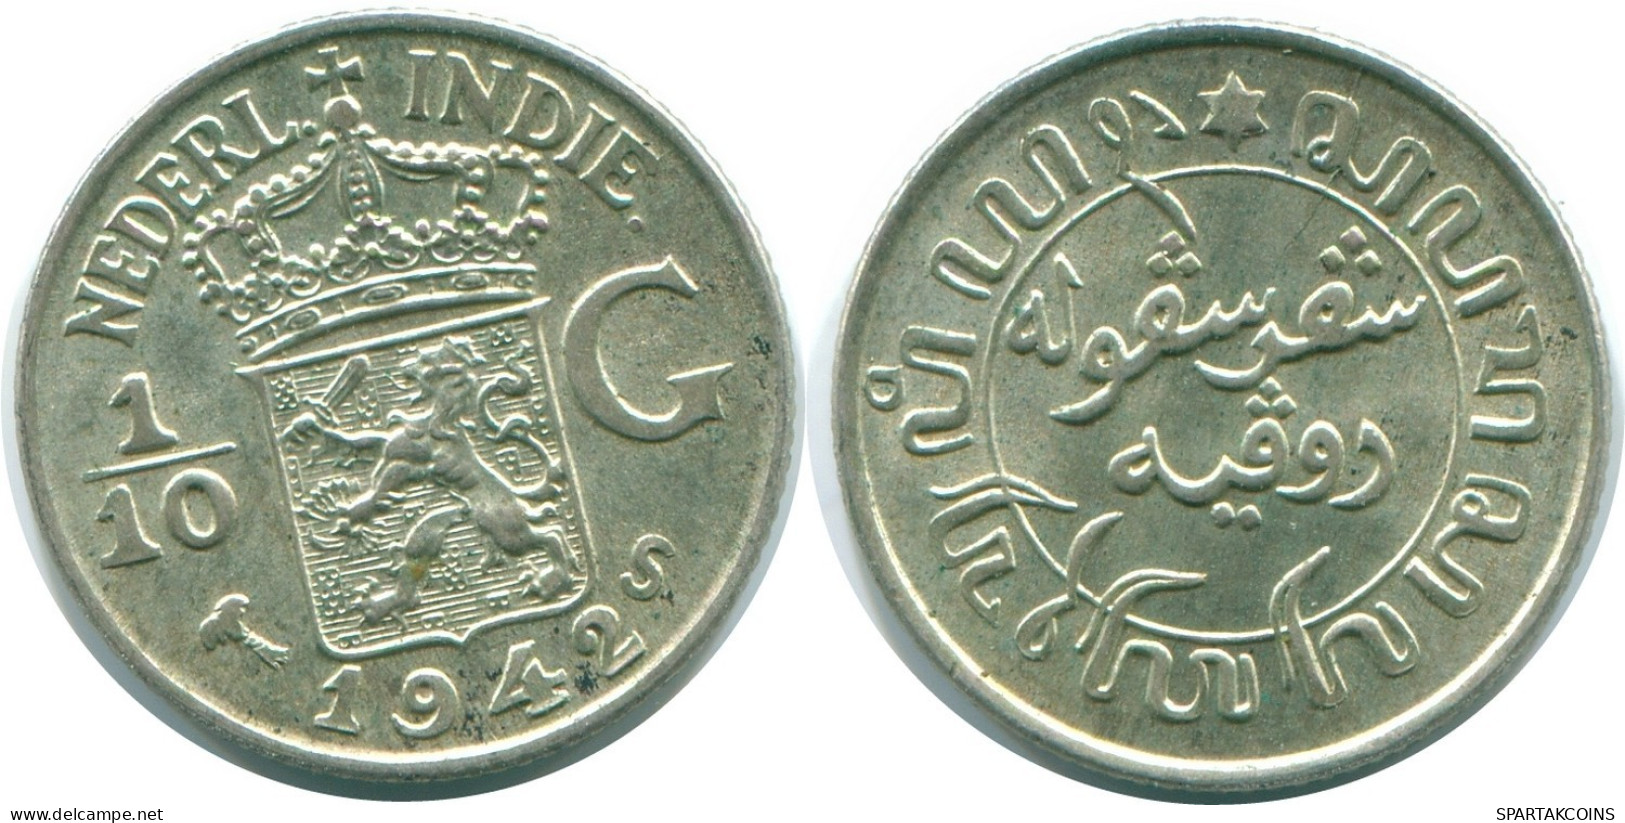 1/10 GULDEN 1942 NETHERLANDS EAST INDIES SILVER Colonial Coin #NL13859.3.U.A - Niederländisch-Indien